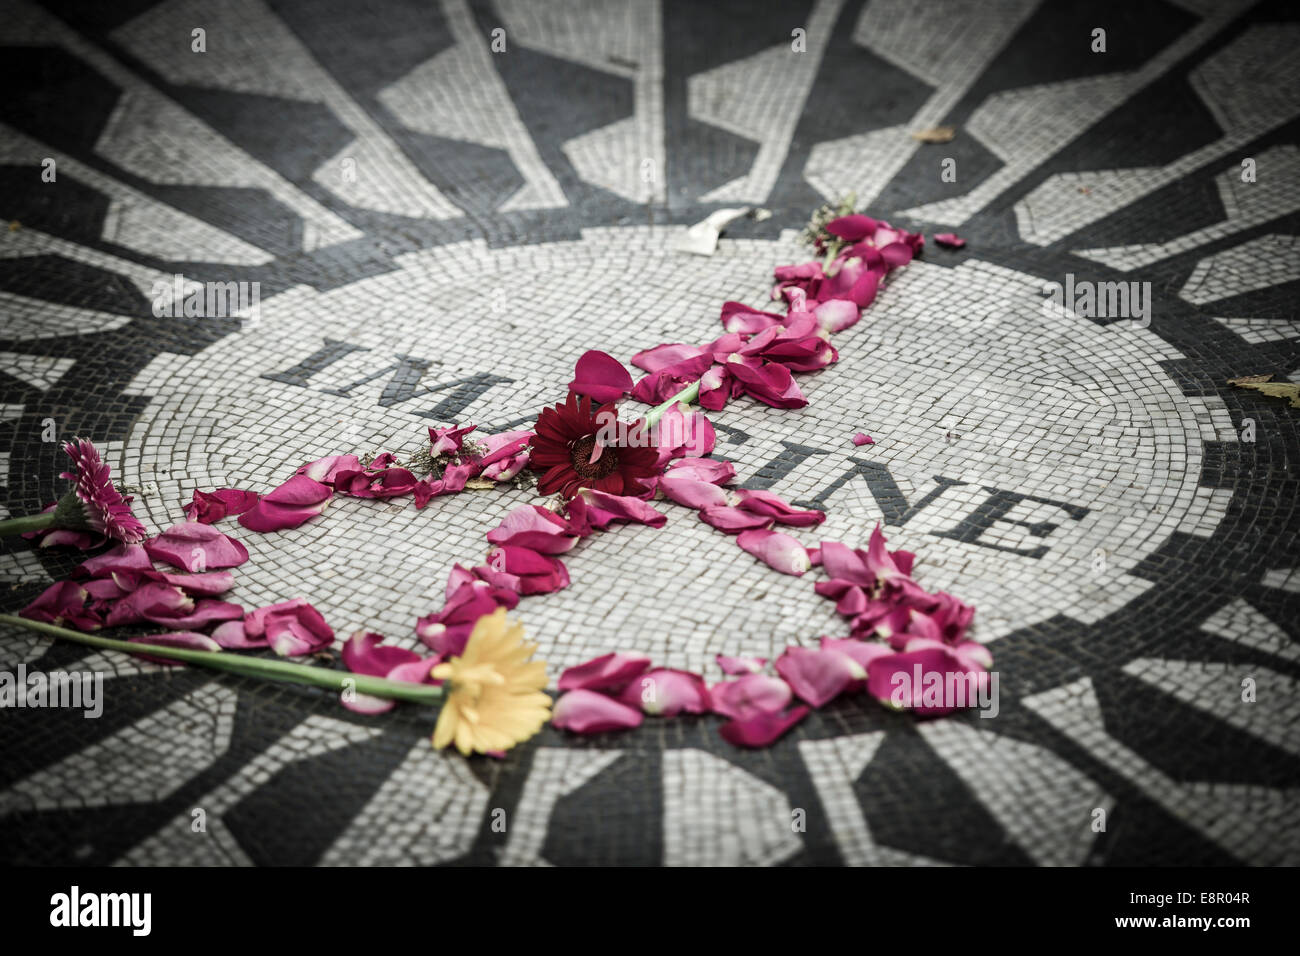 L'immaginare il mosaico, il Memoriale alla ex Beatle John Lennon, Strawberry Fields, Central Park - New York - STATI UNITI D'AMERICA. Foto Stock